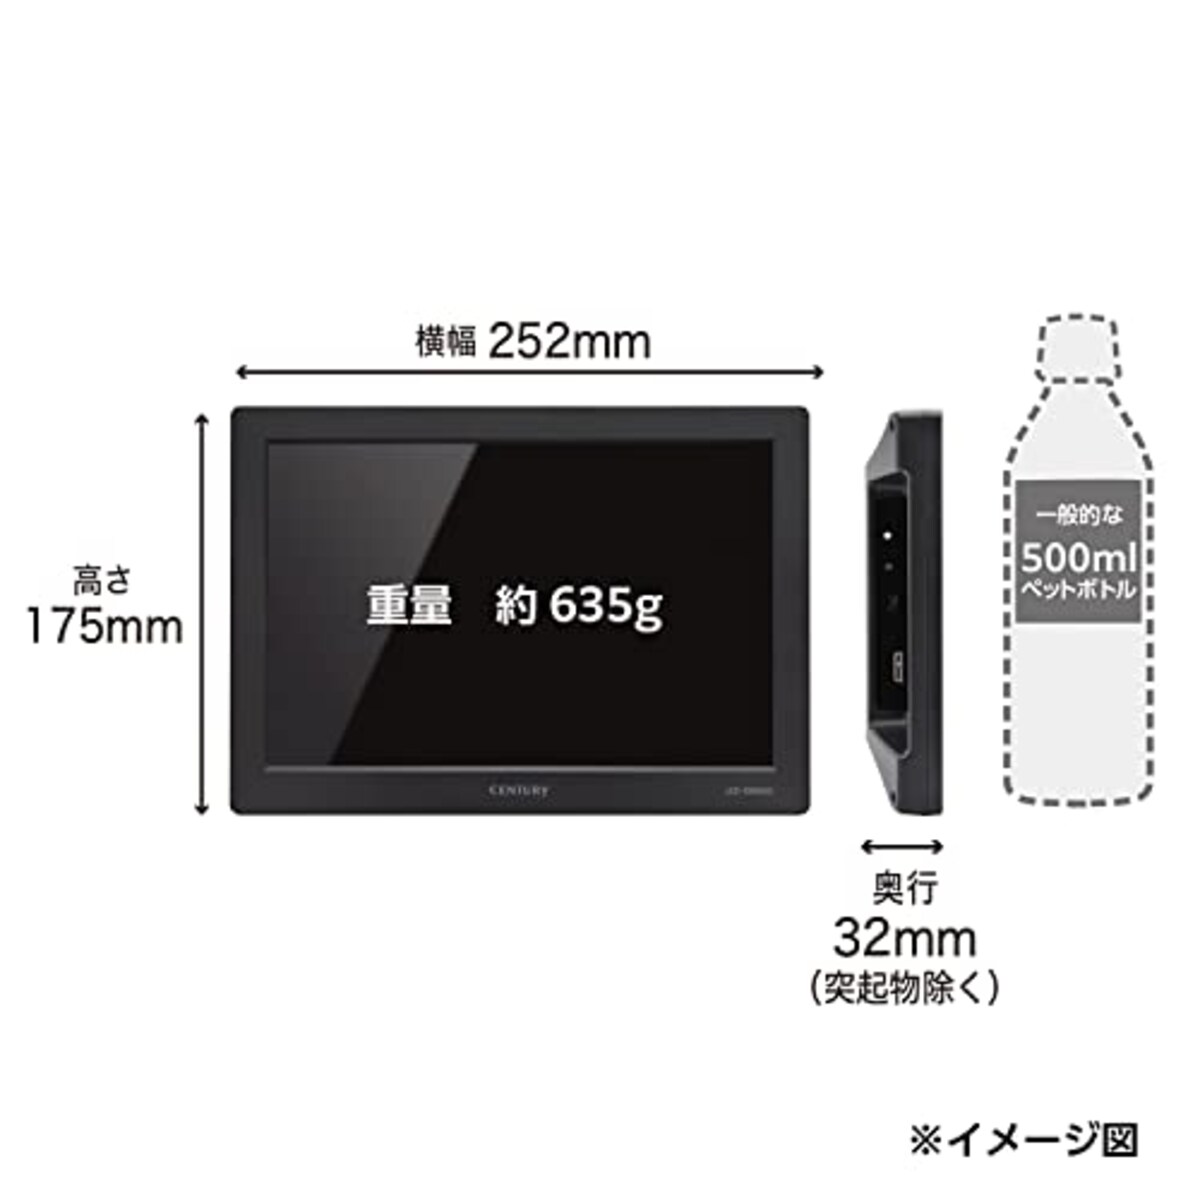  センチュリー 10.1インチ USBモニター plus one USB LCD-10000U3_FP画像6 